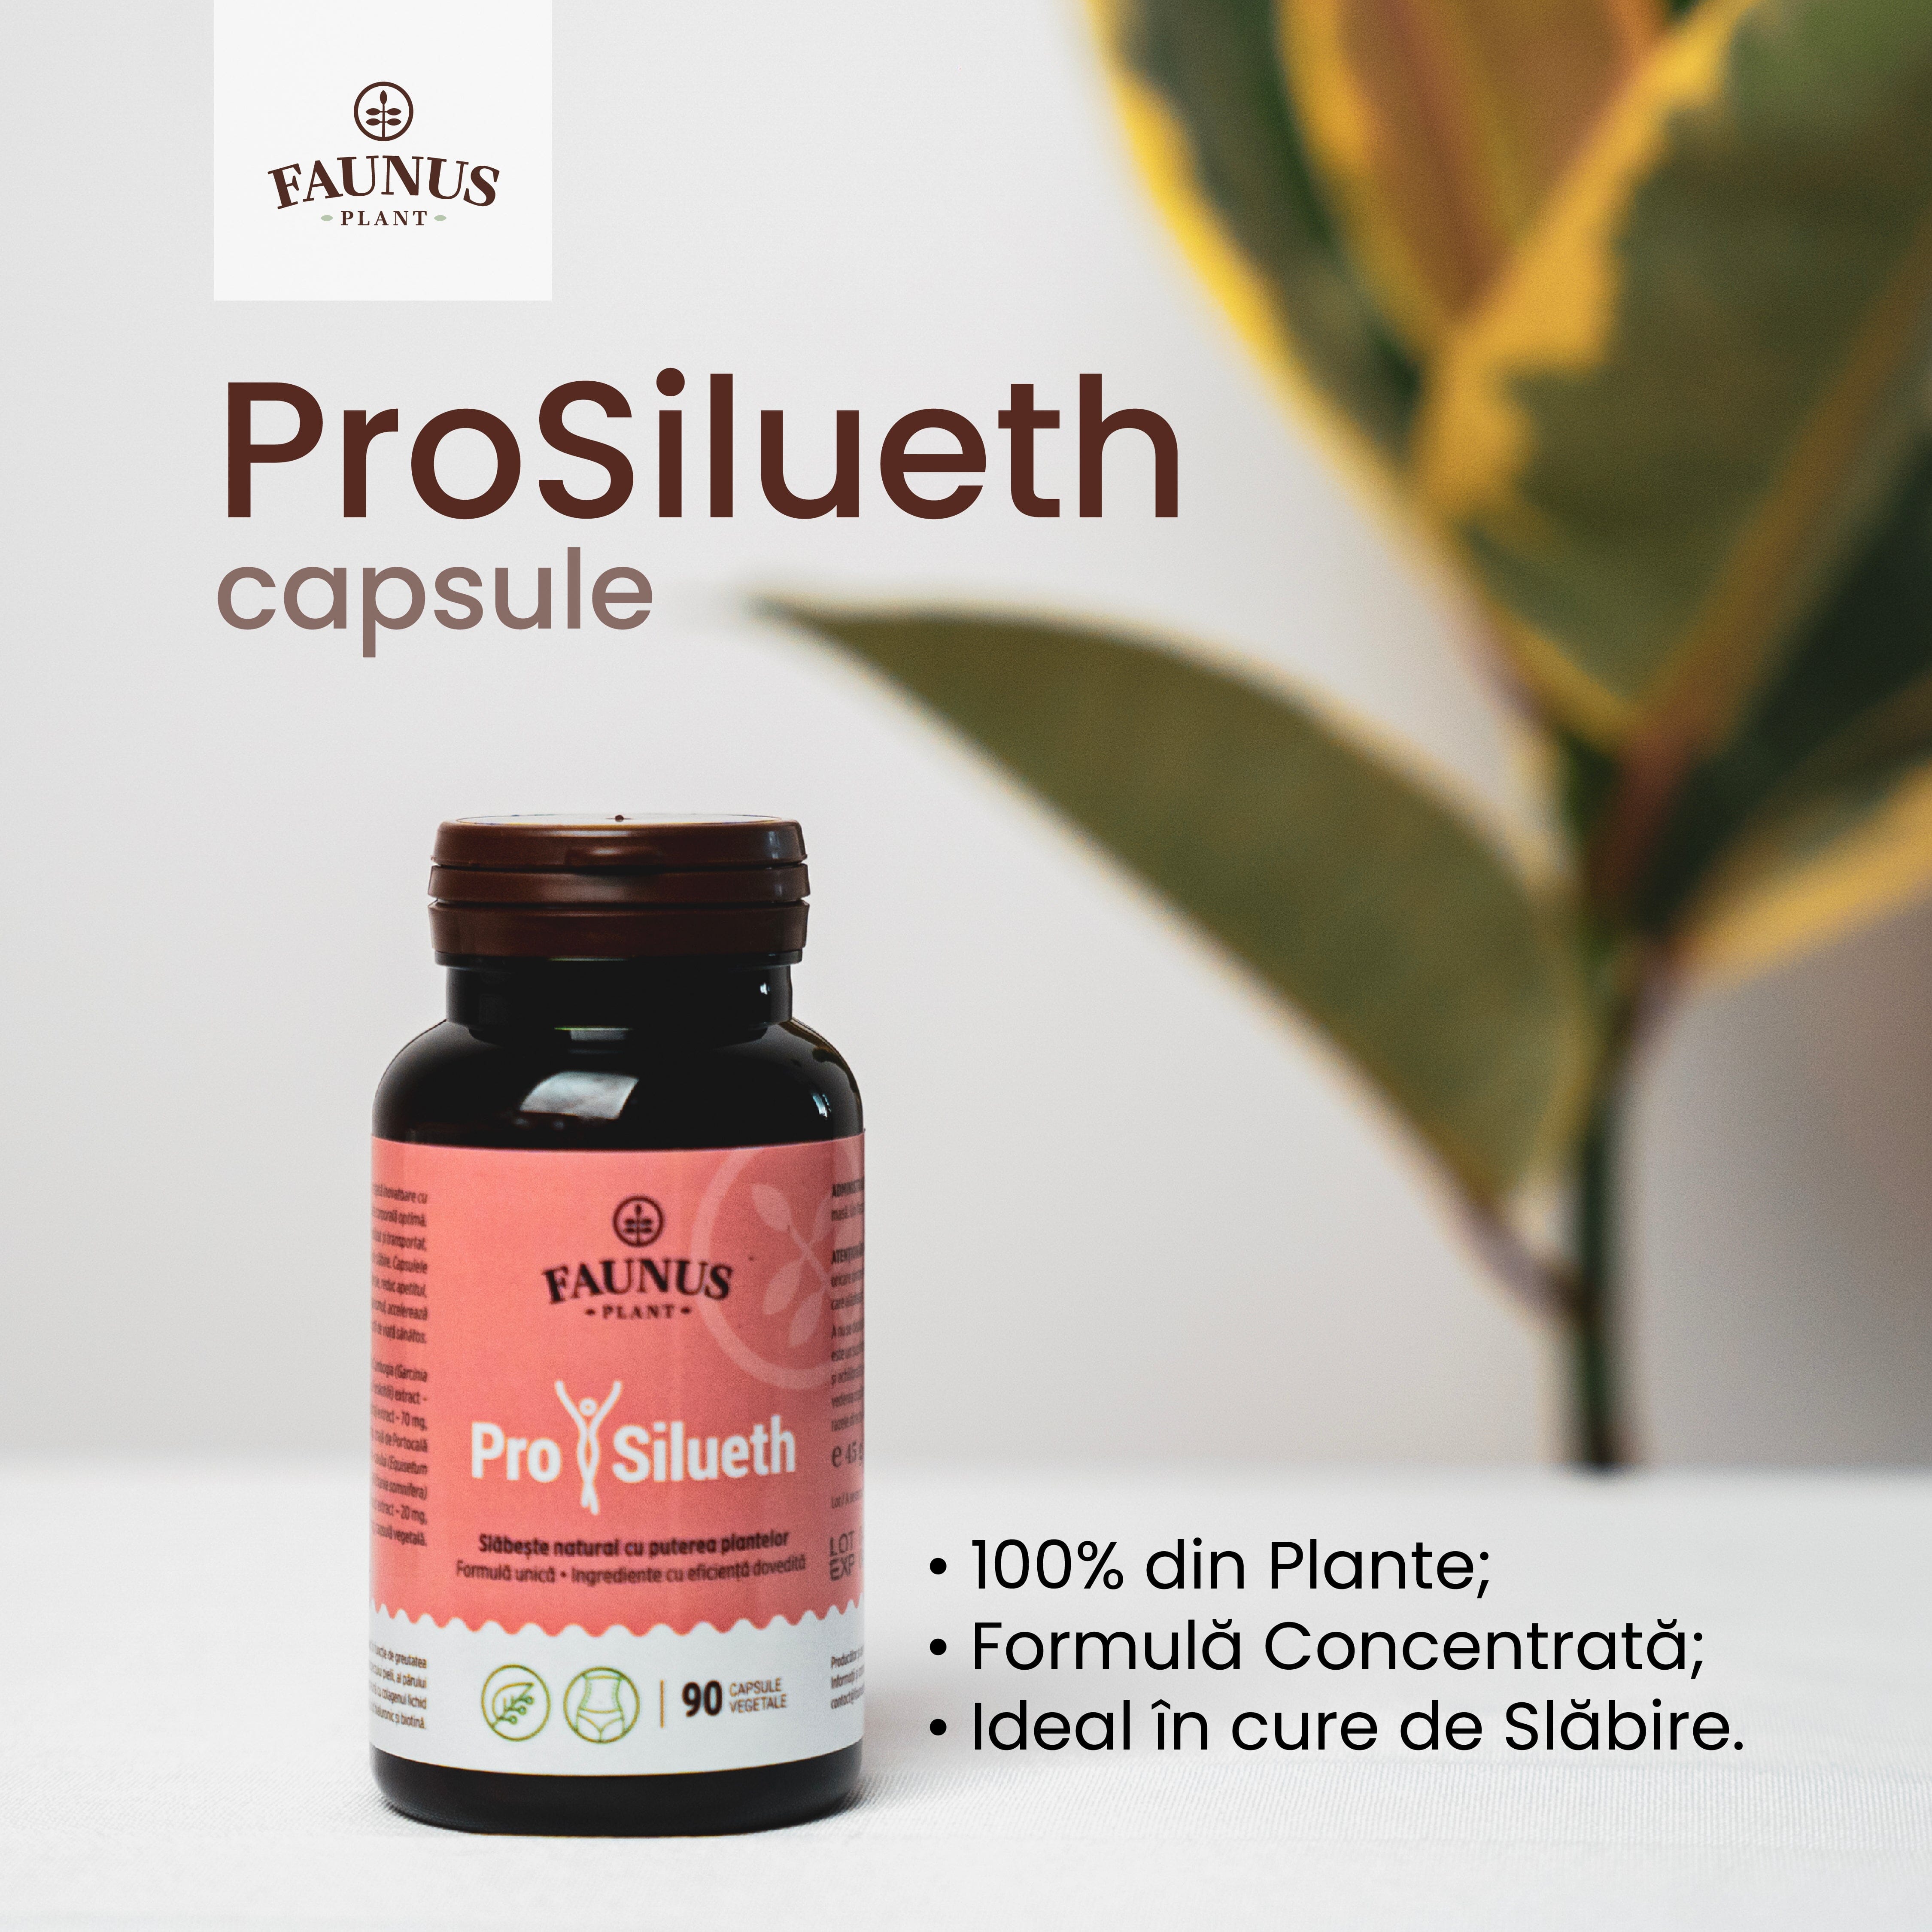 ProSilueth Capsule - Formulă unică pentru cura de slăbire, plante medicinale cu acțiune dovedită pentru accelerarea metabolismului, arderea grăsimilor, reducerea apetitului și detoxifierea organismului - 90 capsule Cosmetics Faunus Plant 